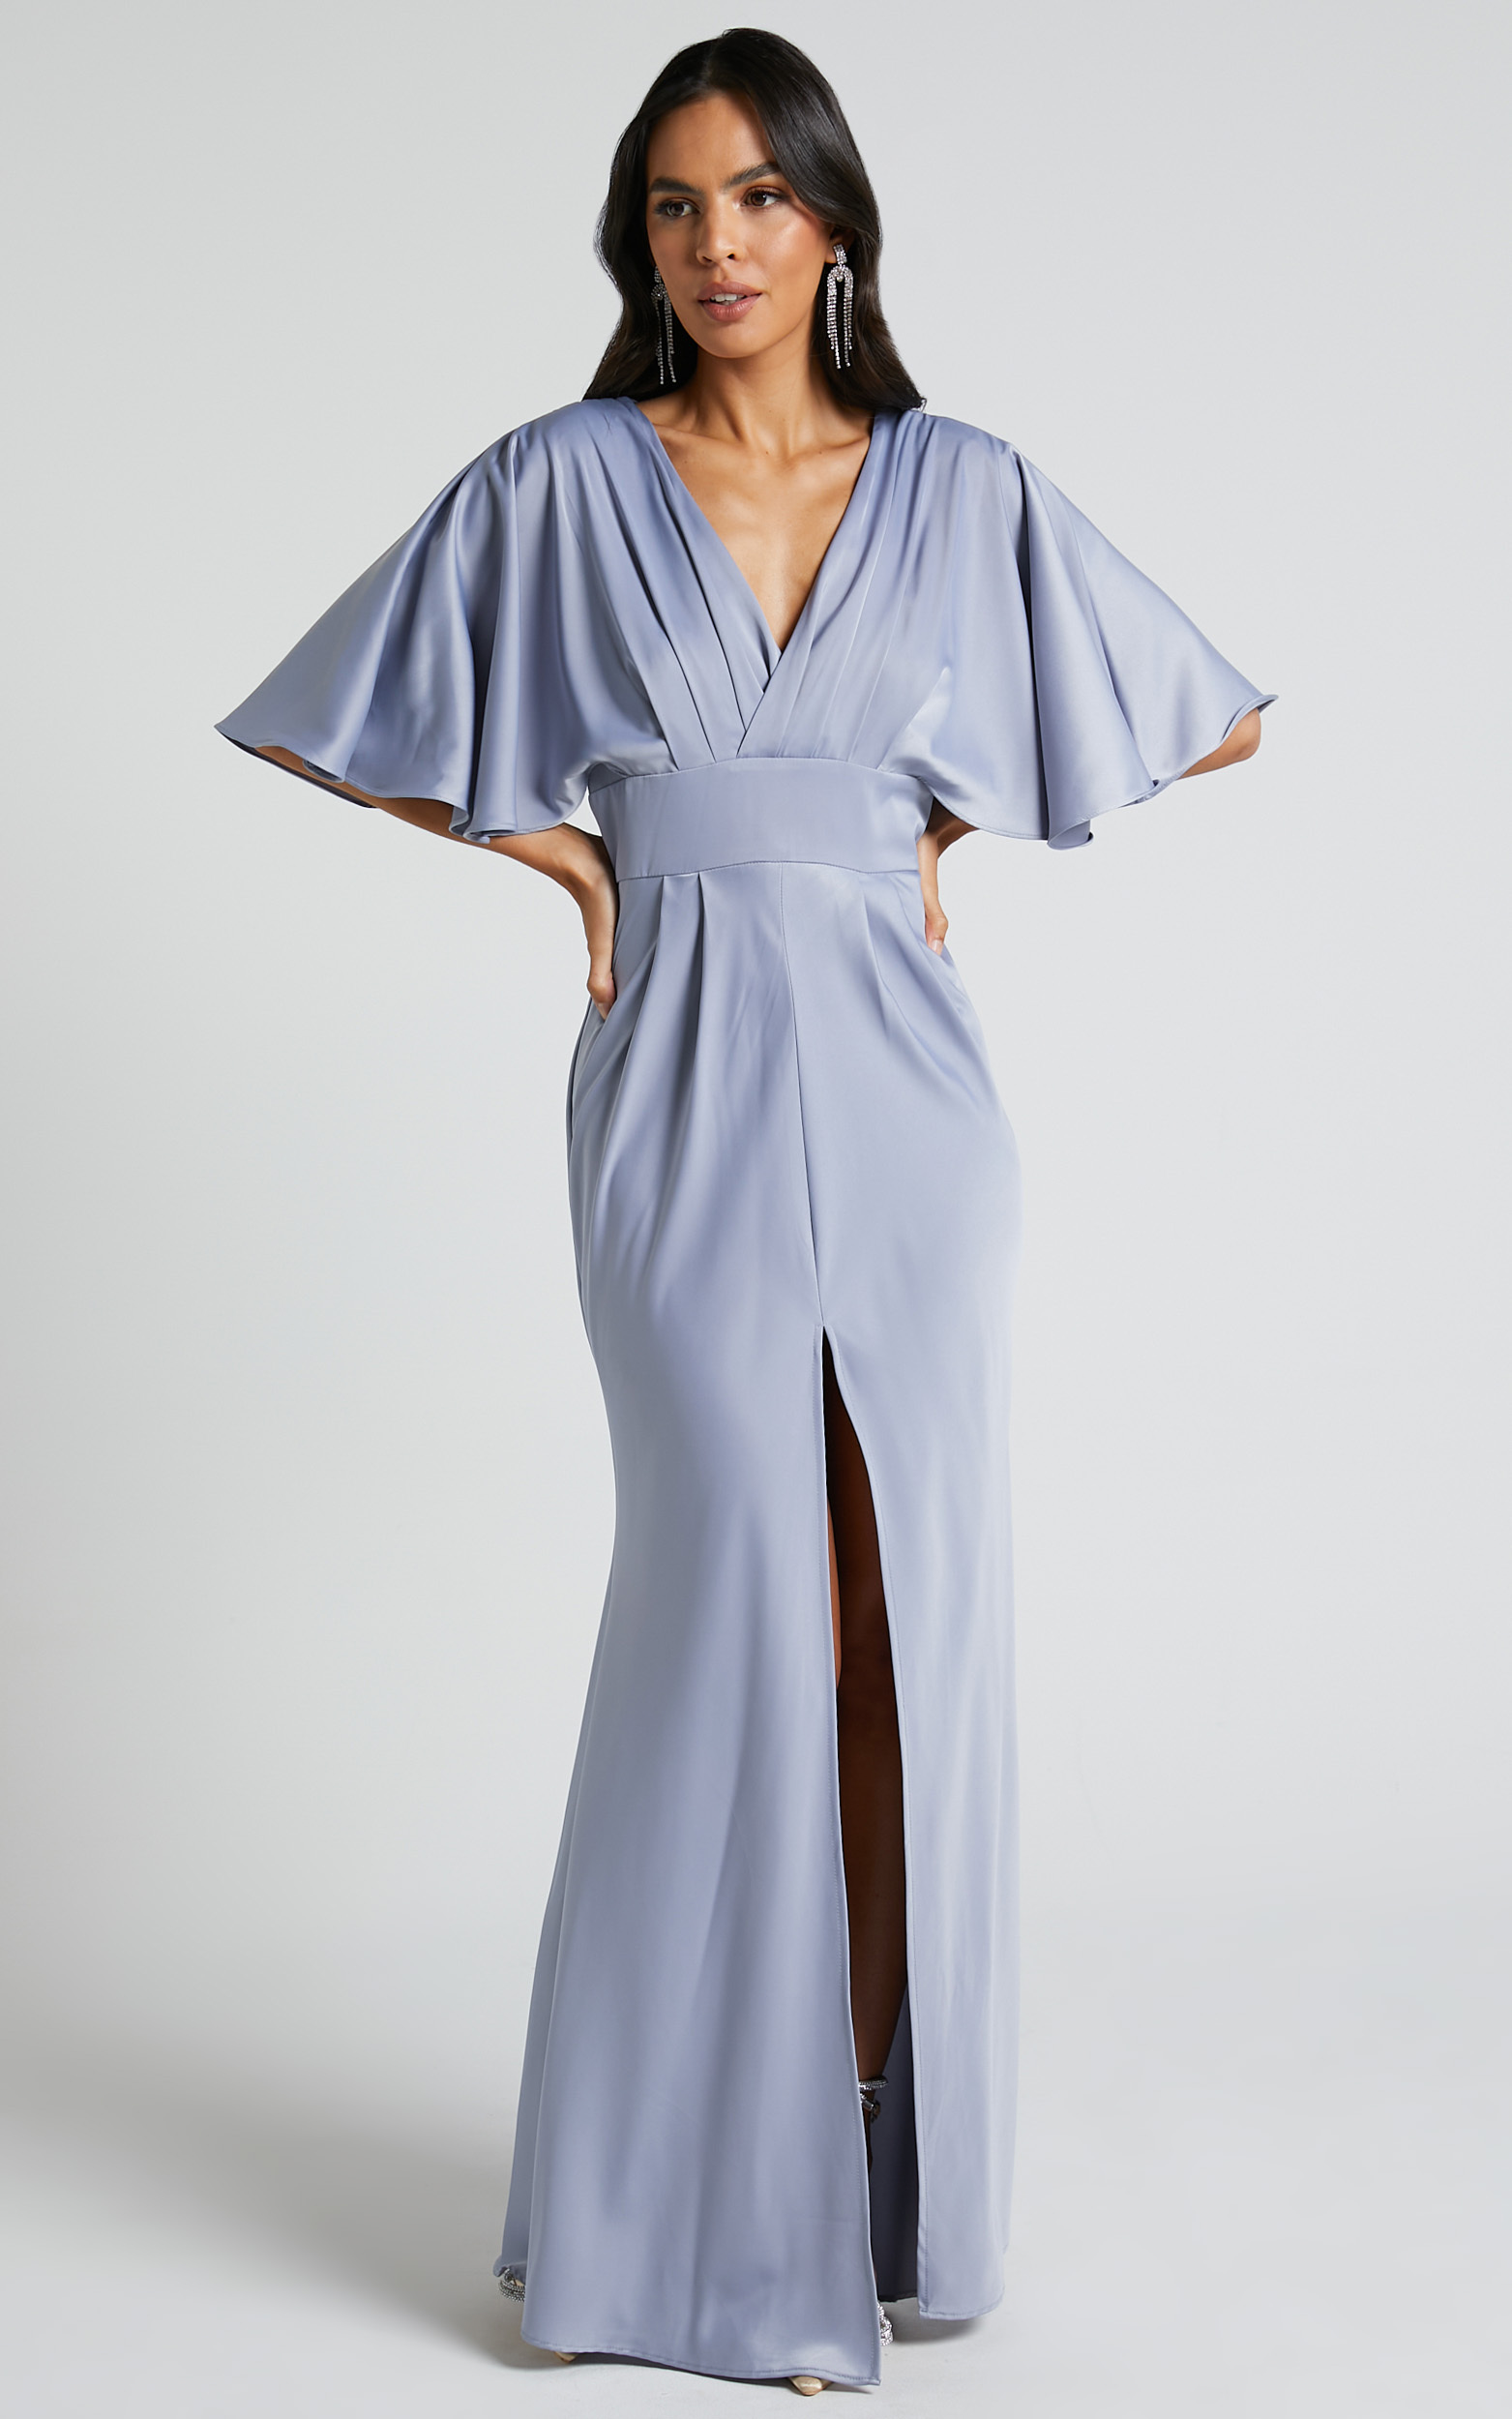 Gemalyn Maxi Dress - Angel Sleeve V Neck Split Dress in Sky Blue - 04, BLU2, hi-res image number null